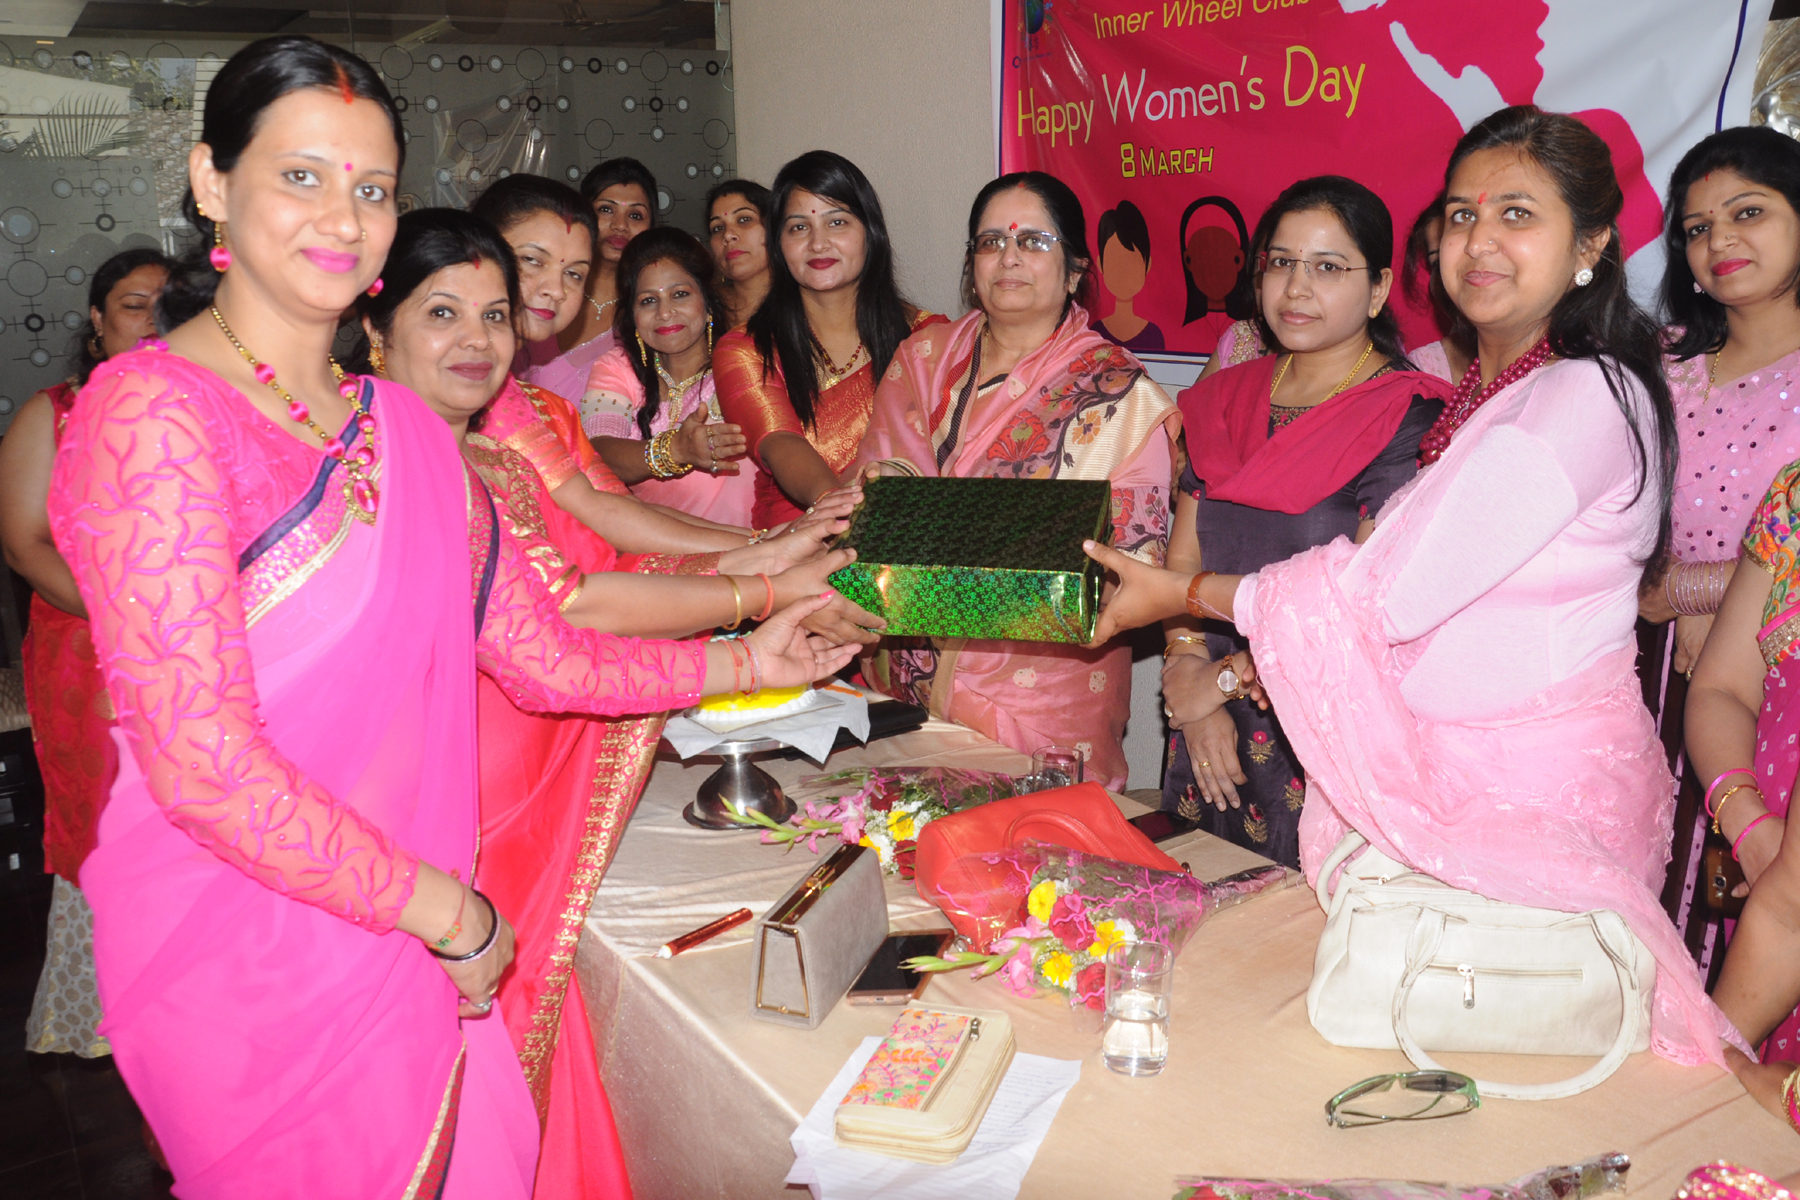  रेलवे स्टेशन में आयोजित कार्यक्रम में उत्कृष्ट कार्य करने वाली महिला कर्मचारियों को प्रमाण पत्र देकर सम्मानित किया गया। 